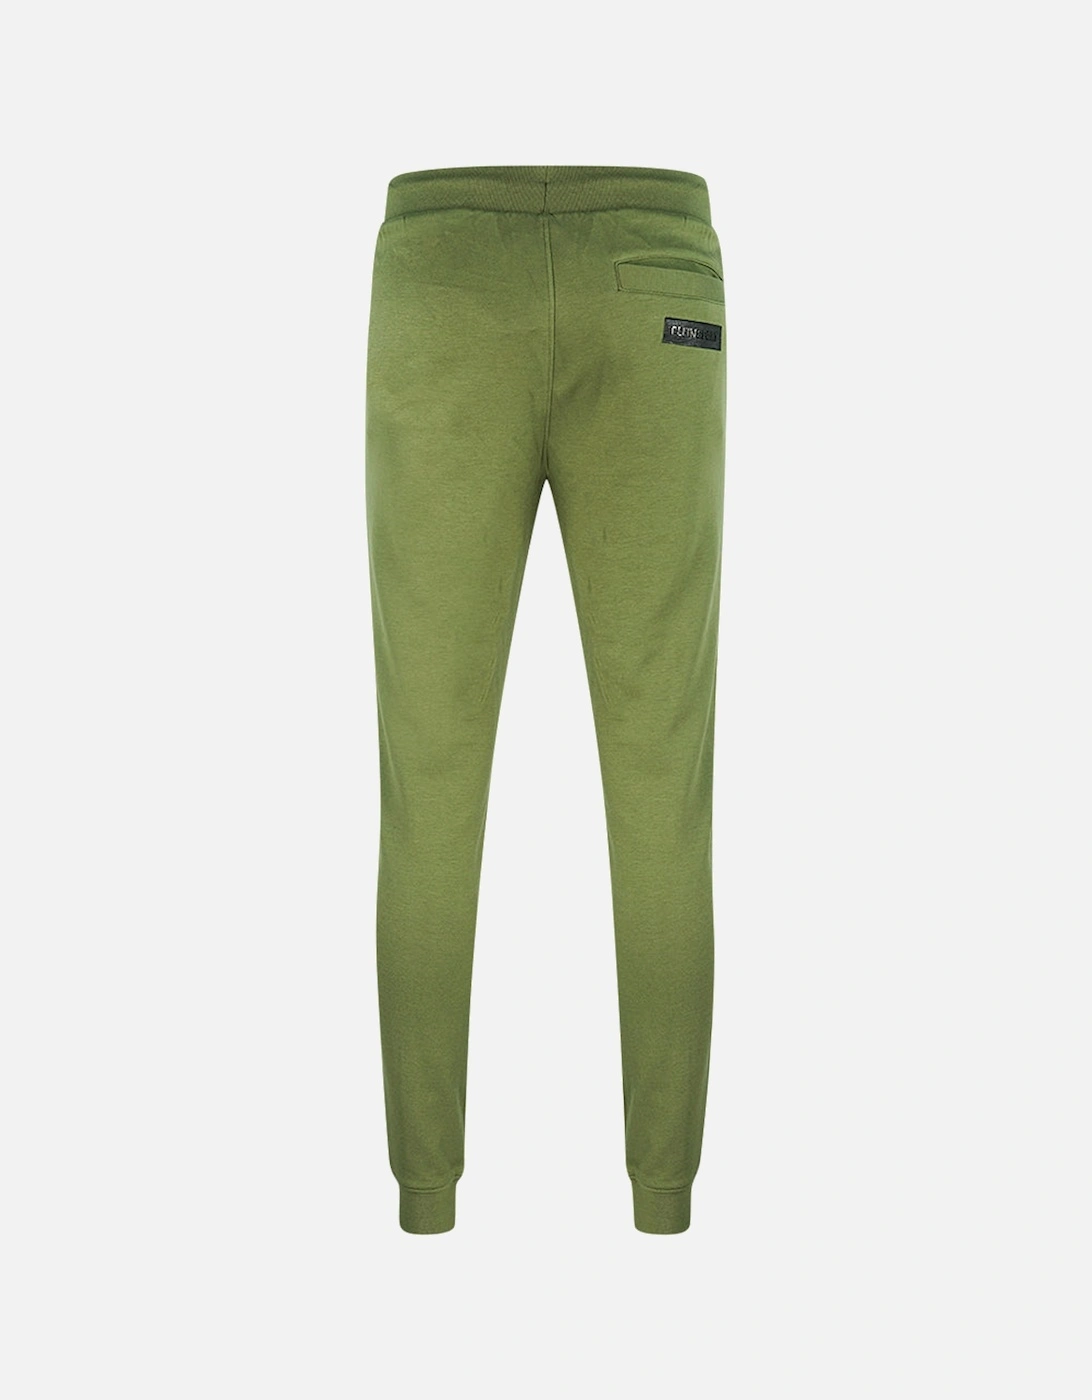 Plein Sport Lined Logo Green Sweatpants